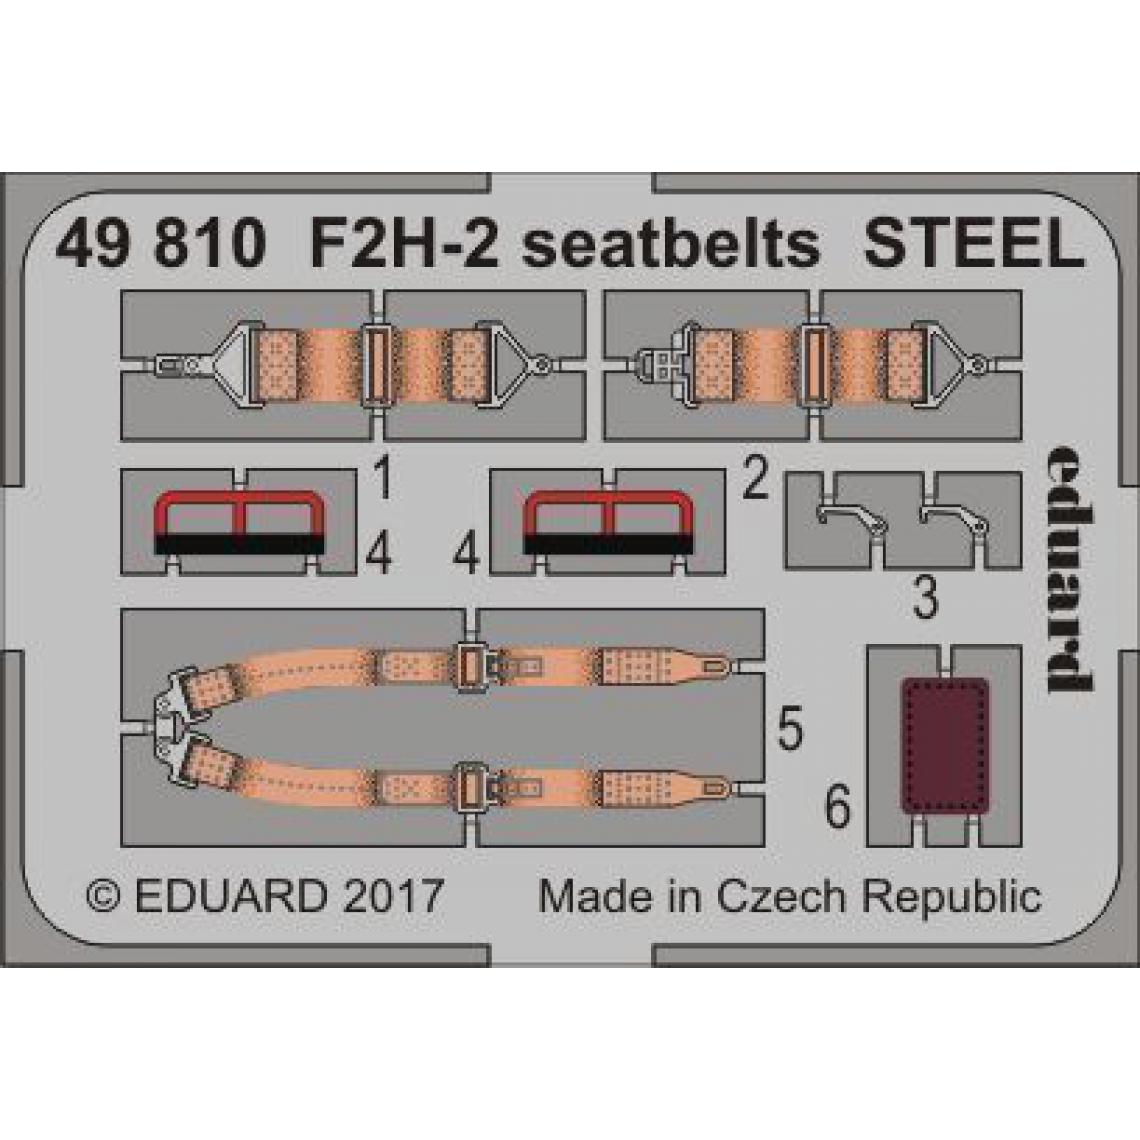 Eduard - F2H-2 seatbelts STEEL for KittyHawk - 1:48e - Eduard Accessories - Accessoires et pièces